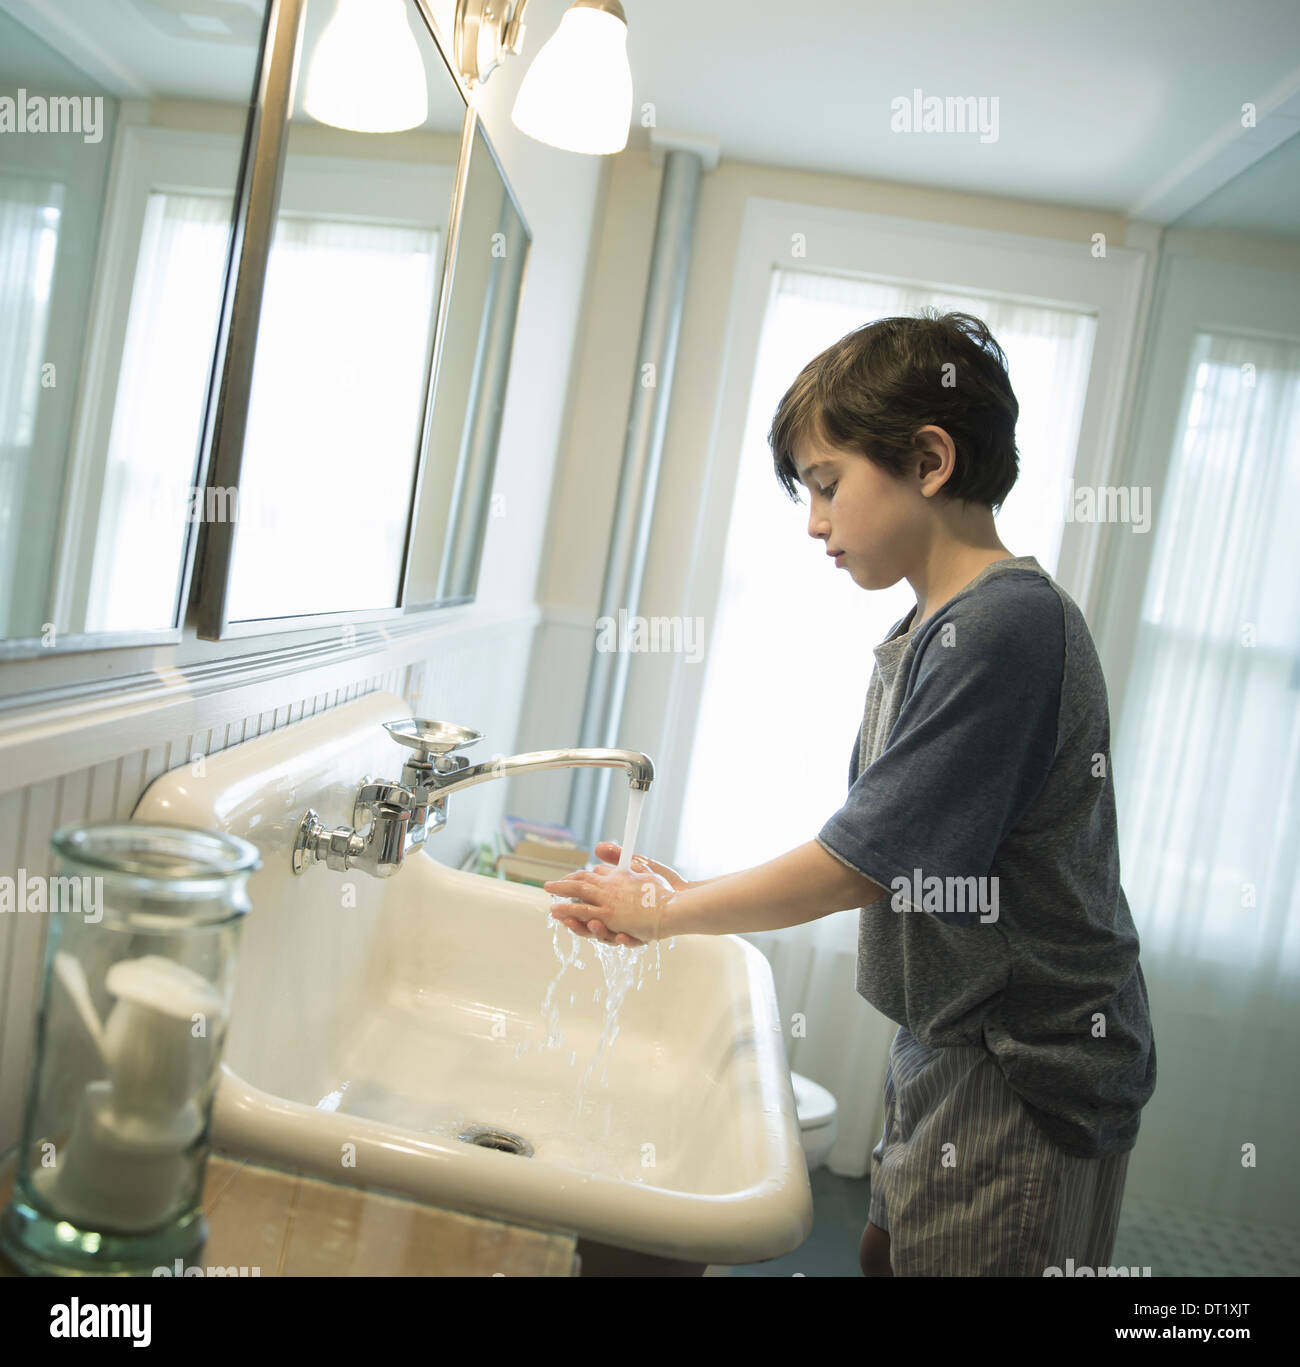 Ein Junge steht im Bad waschen seine Hände unter den Wasserhahn Stockfoto